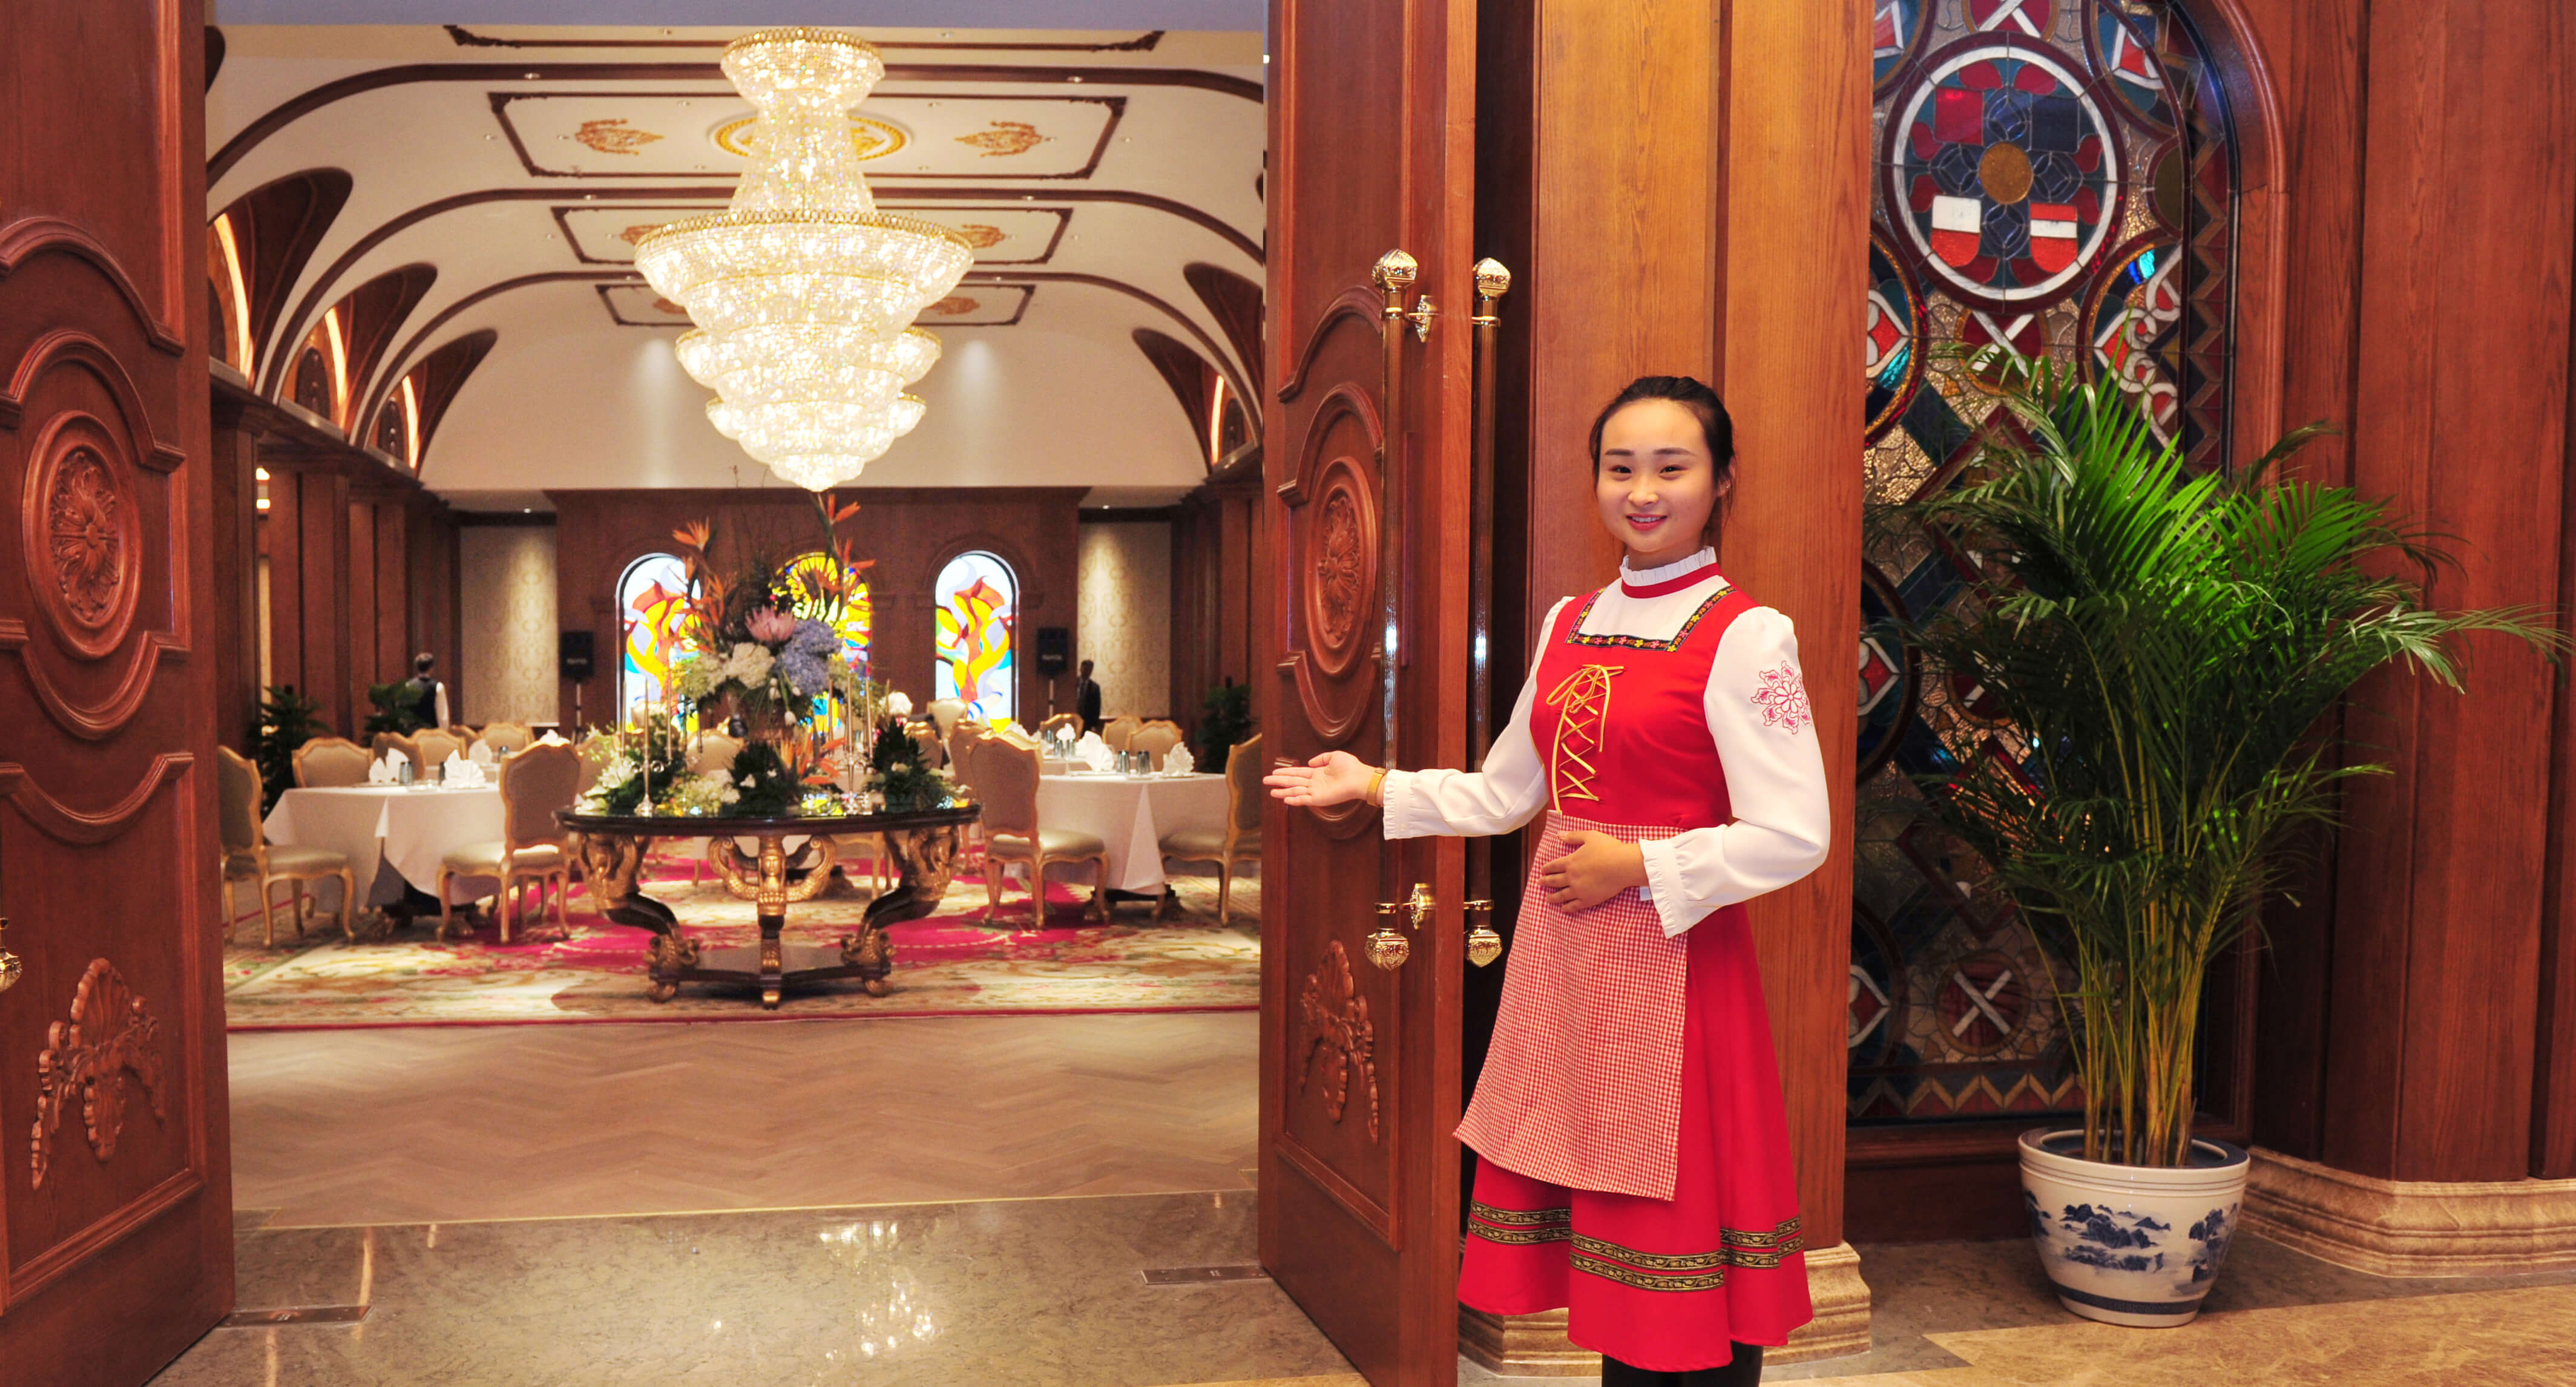 俄罗斯餐厅 - 美食 - 北京友谊宾馆 - 北京友谊宾馆